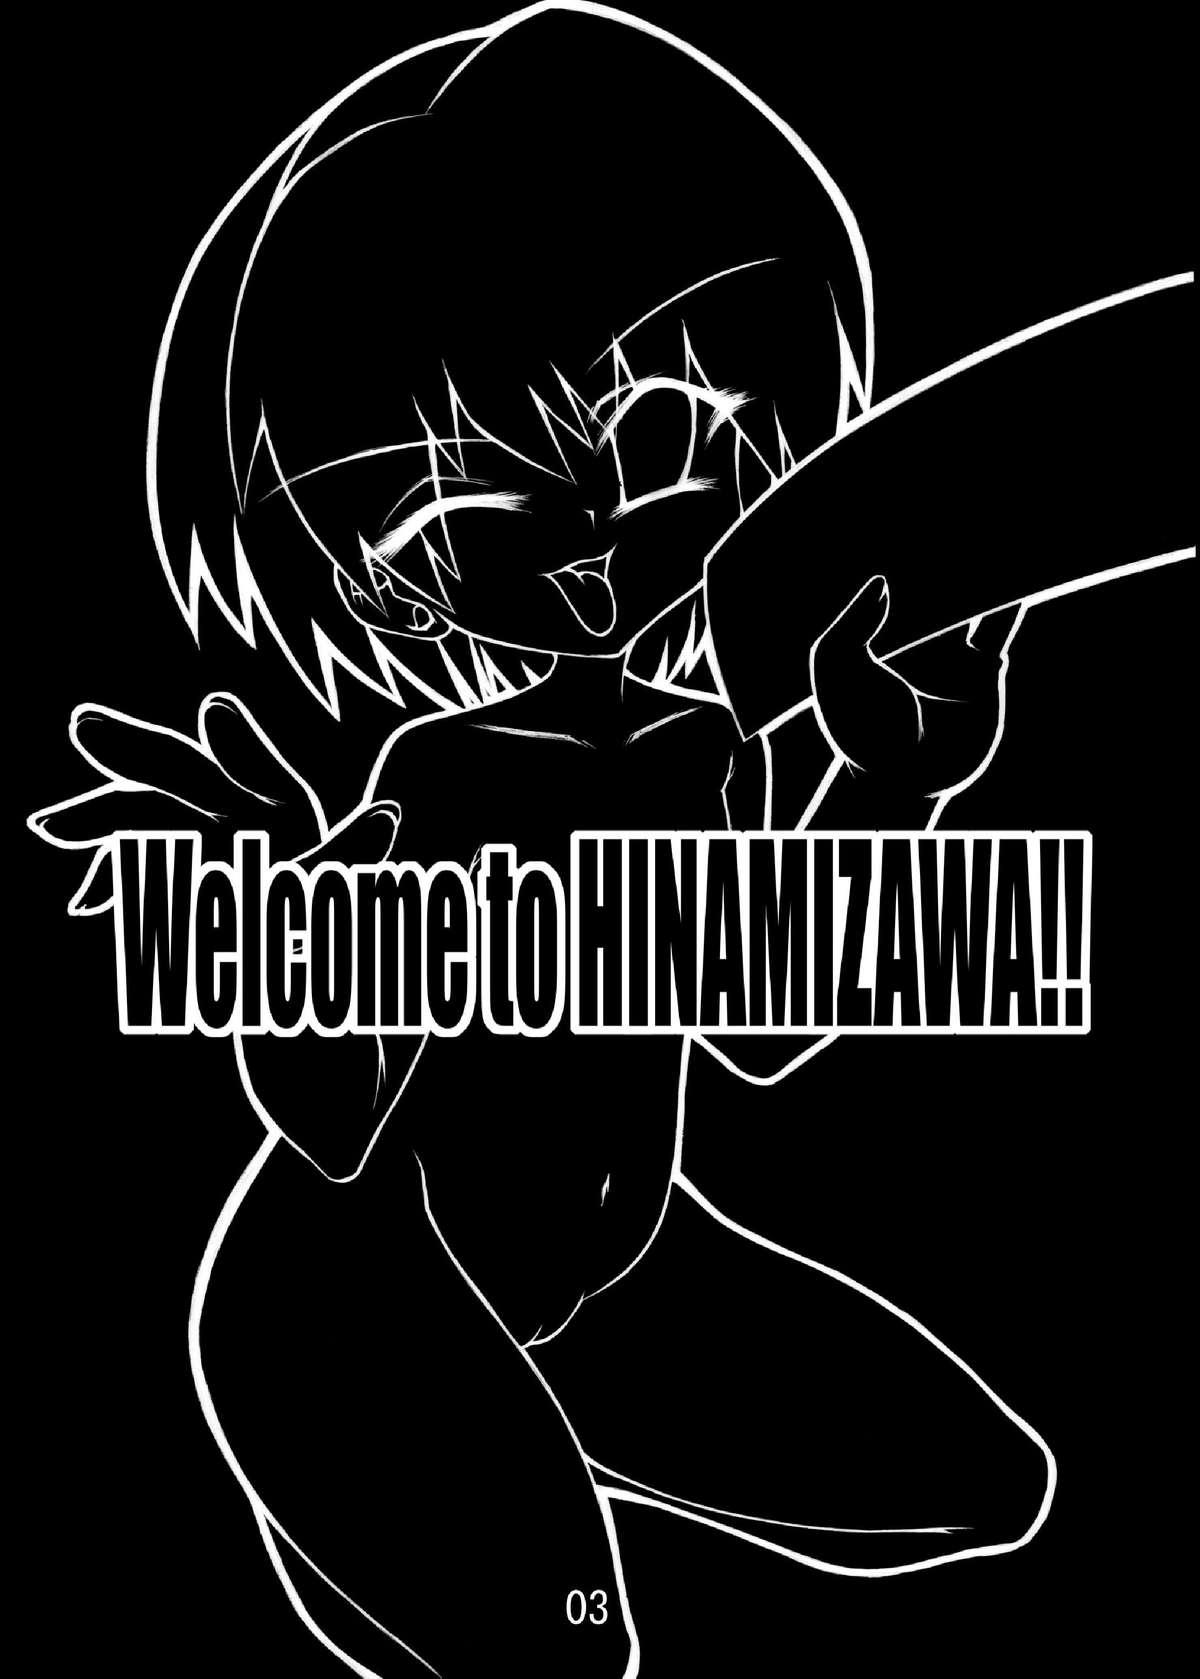 Hinamizawa e Youkoso! - Welcome to Hinamizawa! 2